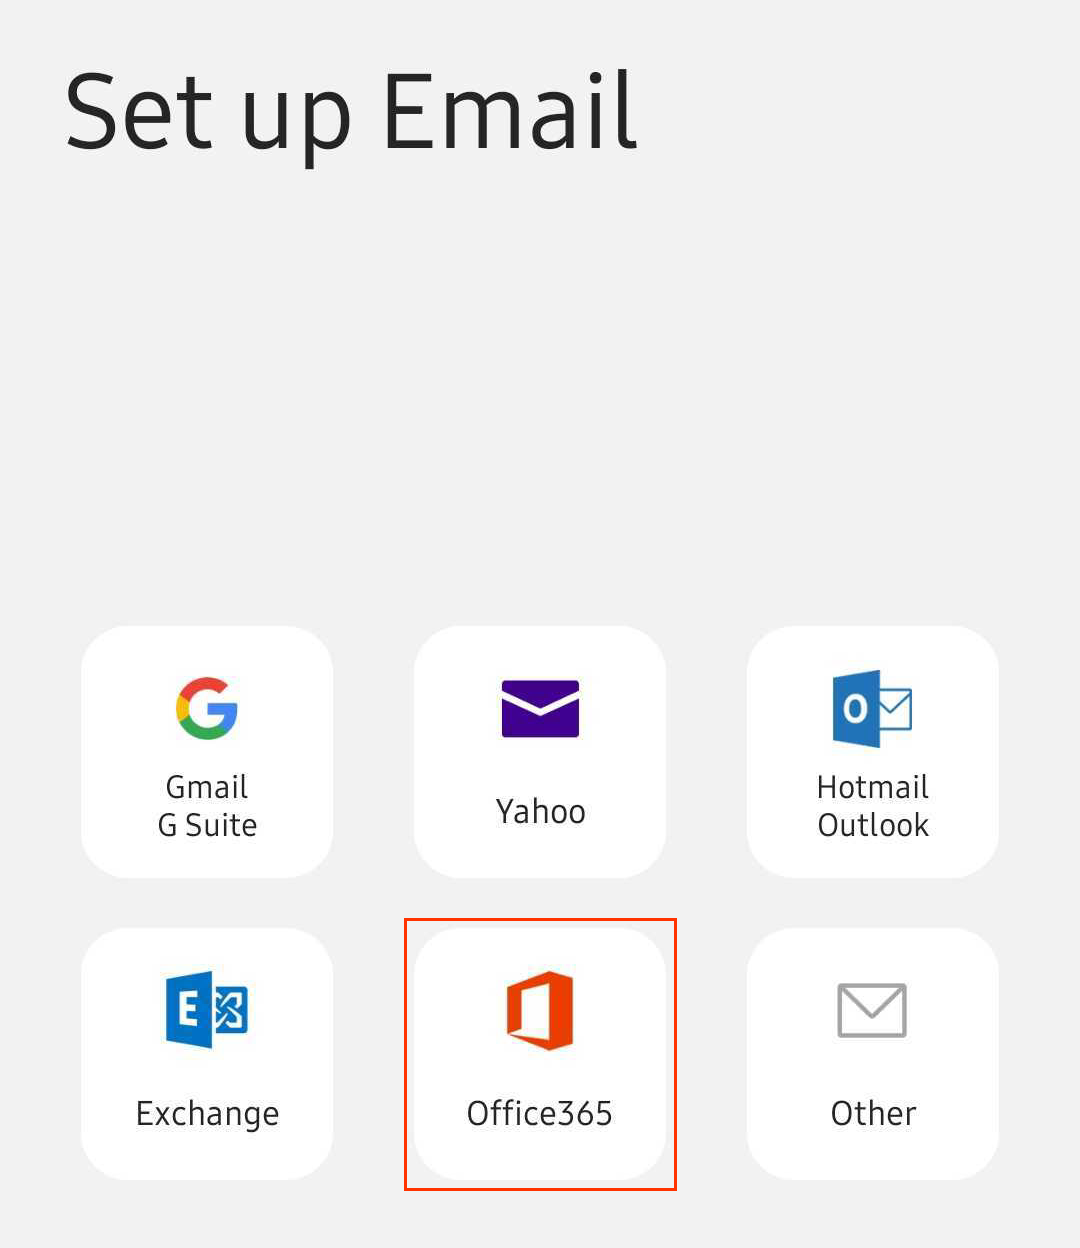 Màn hình với các tùy chọn ứng dụng email khách khác nhau bao gồm Office 365 với hình vuông màu đỏ